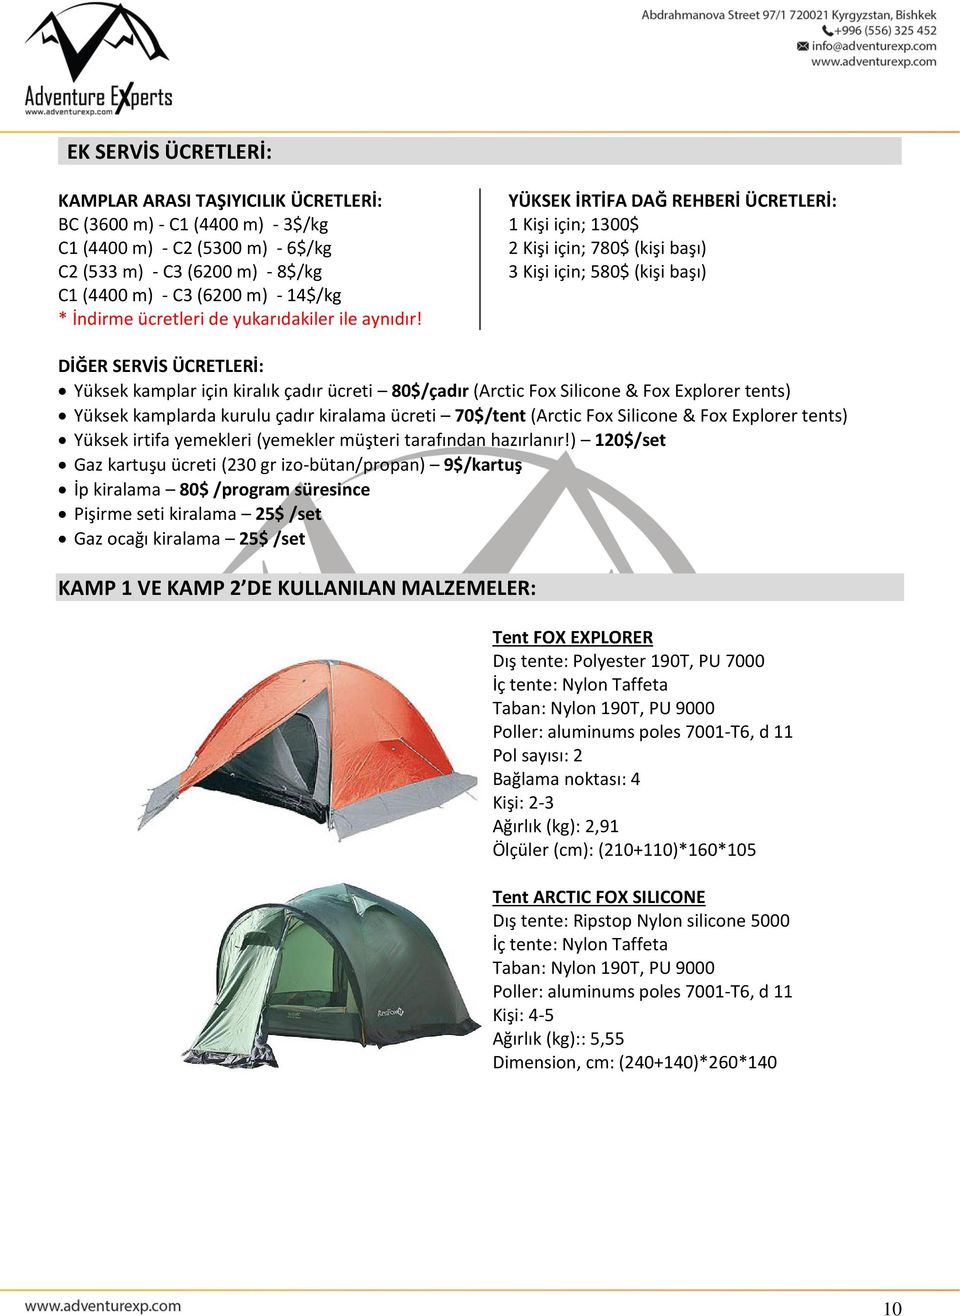 YÜKSEK İRTİFA DAĞ REHBERİ ÜCRETLERİ: 1 Kişi için; 1300$ 2 Kişi için; 780$ (kişi başı) 3 Kişi için; 580$ (kişi başı) DİĞER SERVİS ÜCRETLERİ: Yüksek kamplar için kiralık çadır ücreti 80$/çadır (Arctic